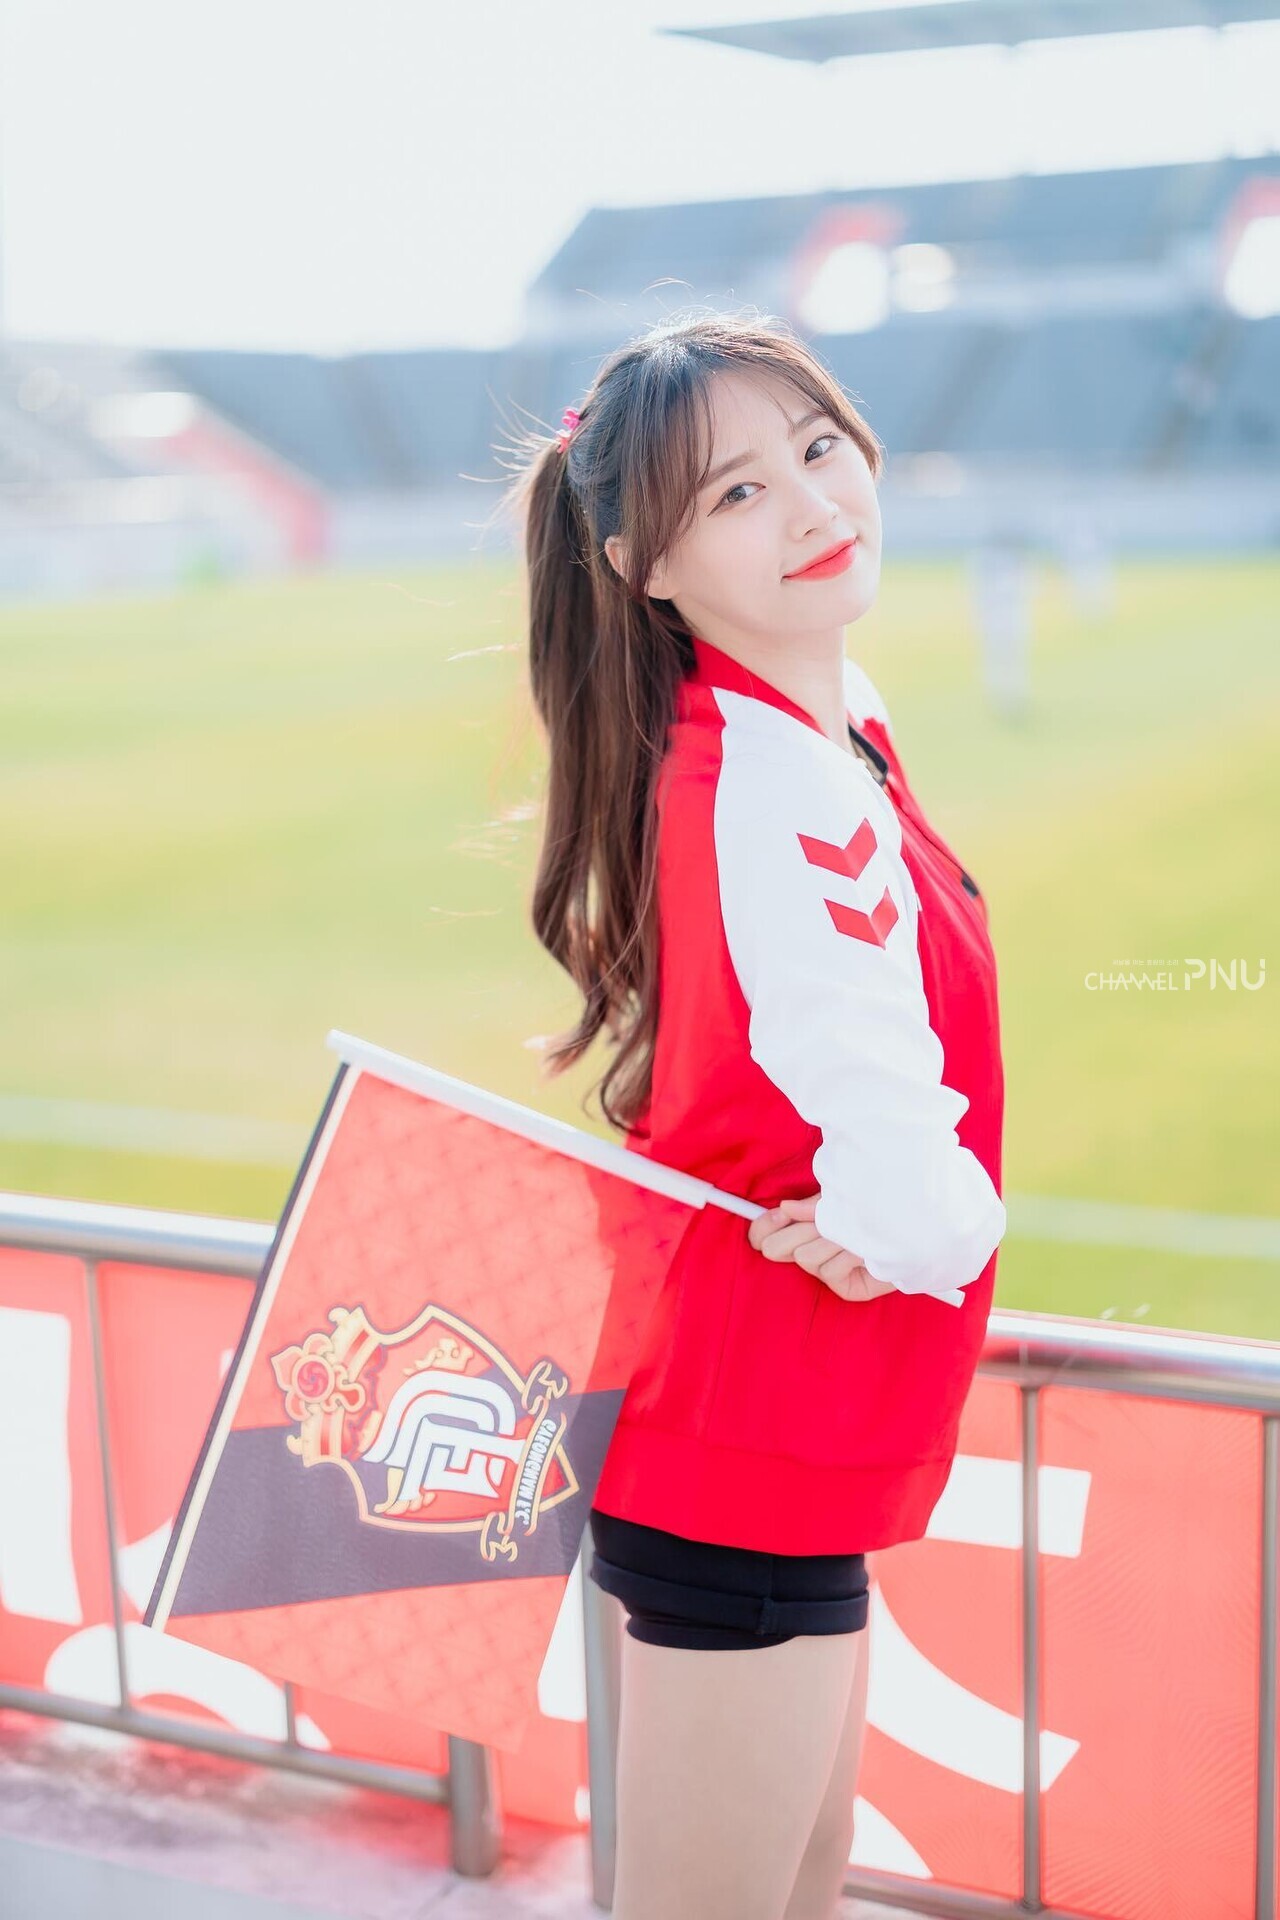 Cheerleader Park Seon-Ju is smiling wide at the camera. [Provided by cheerleader Park Seon-Ju]